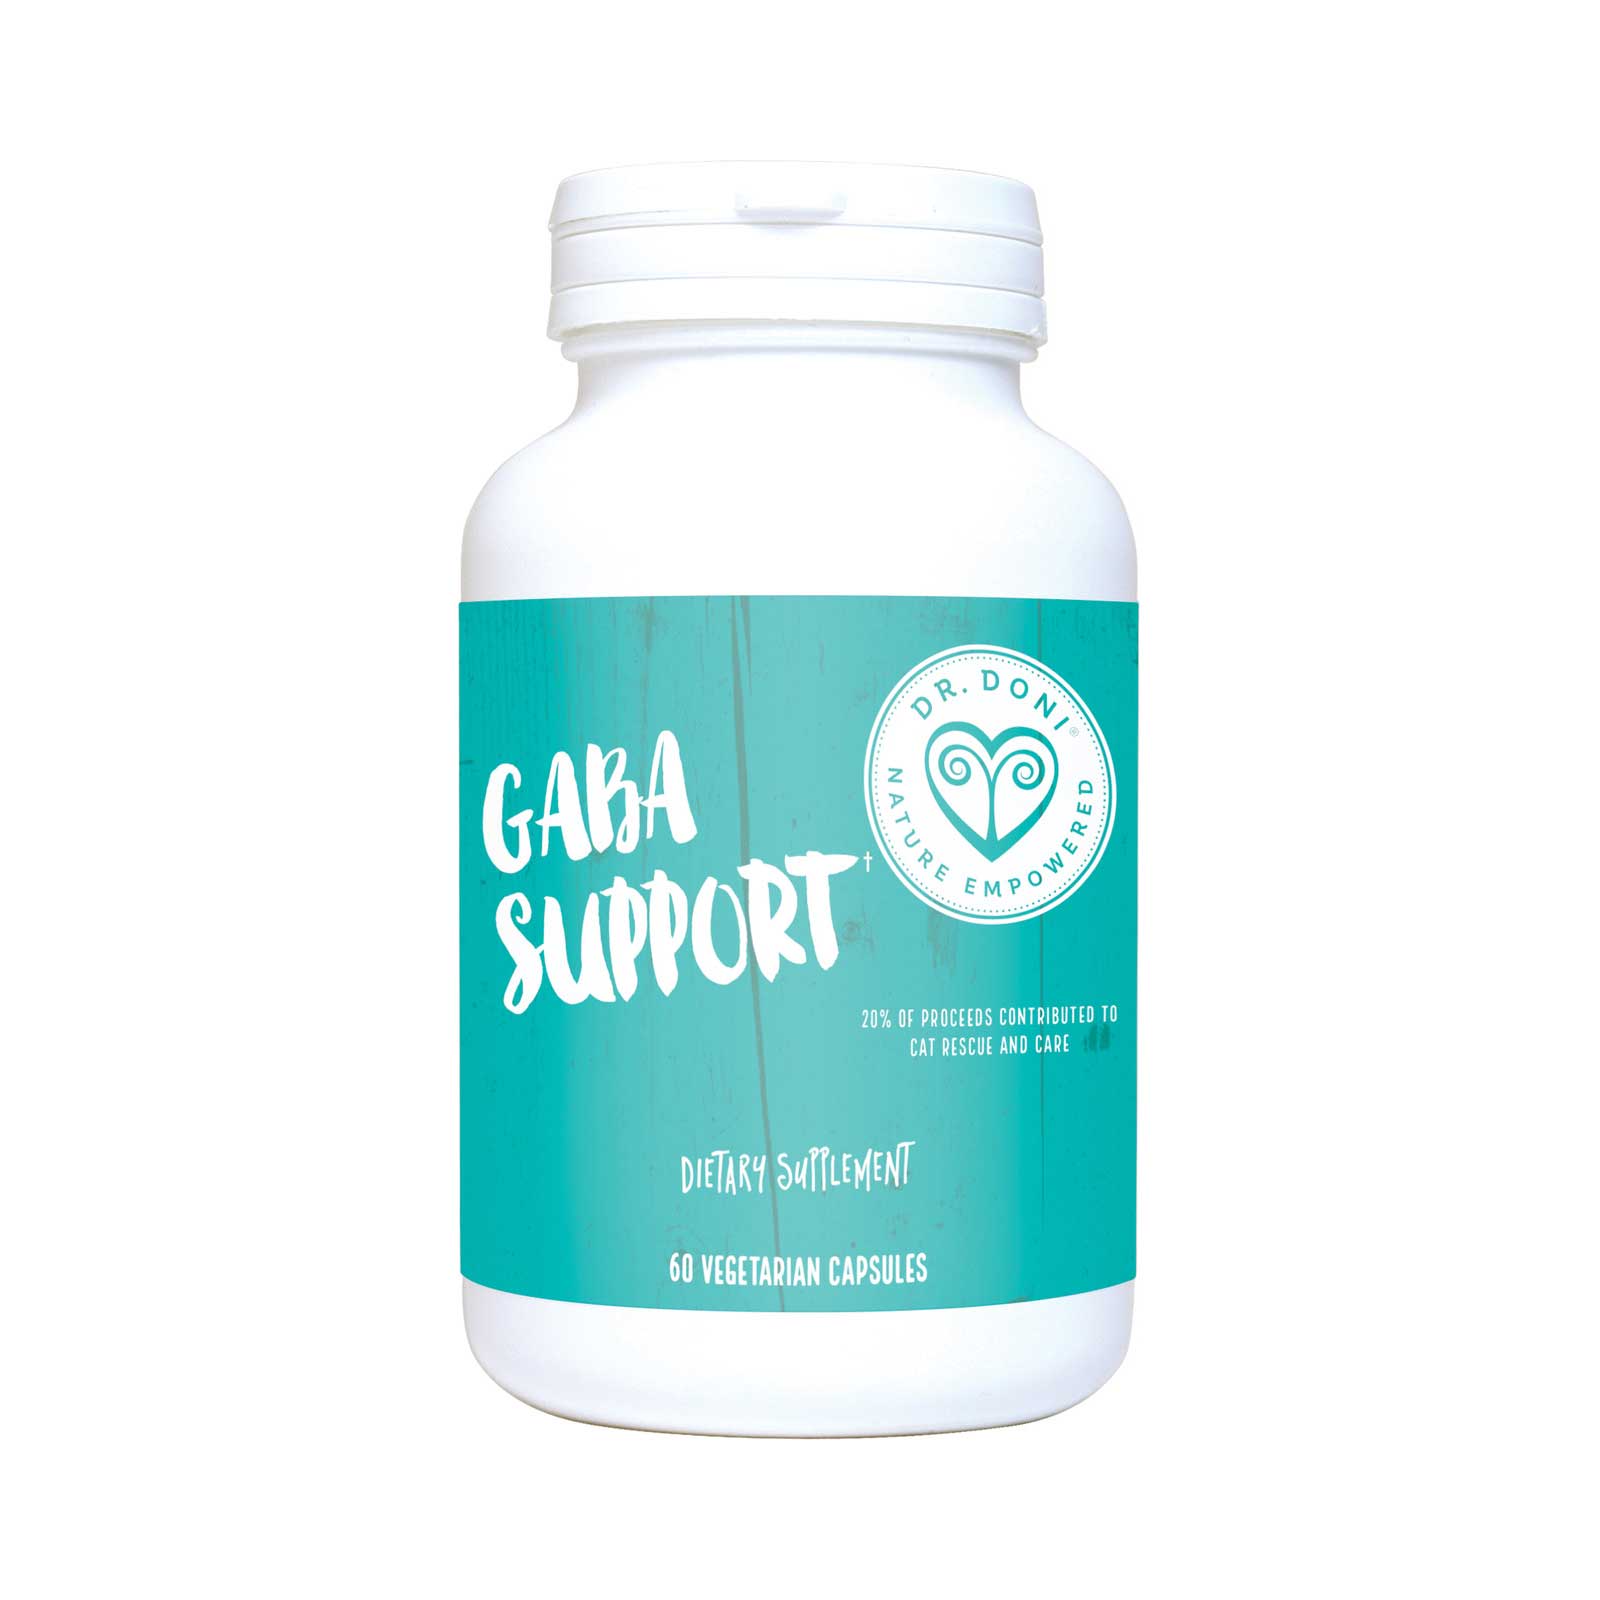 GABA Support